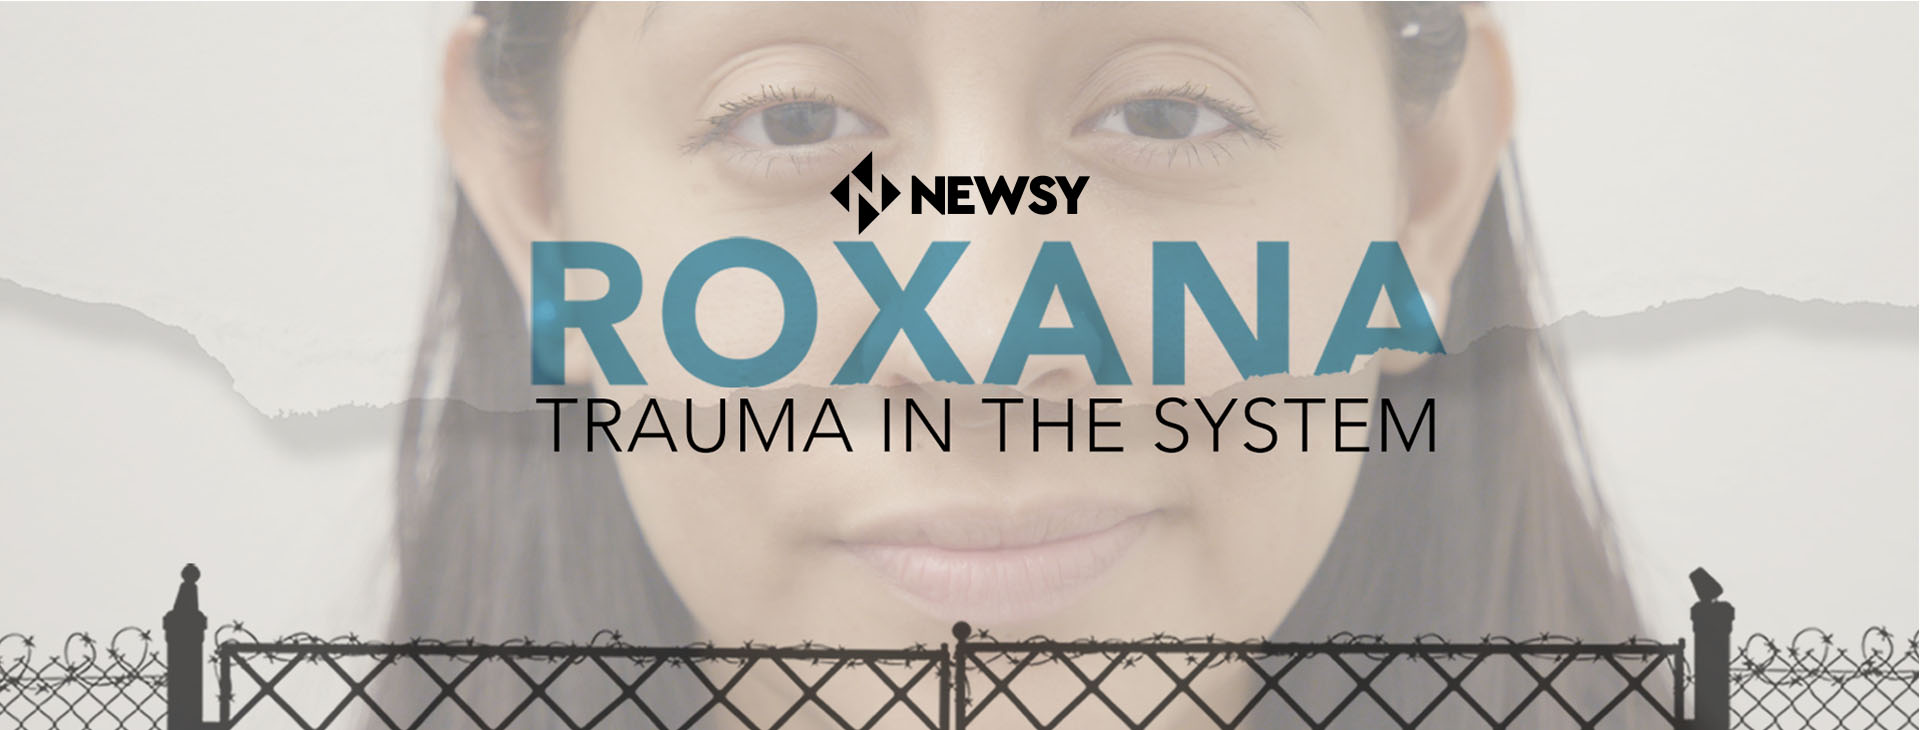 Roxana: Trauma in the System Newsy documentary logo